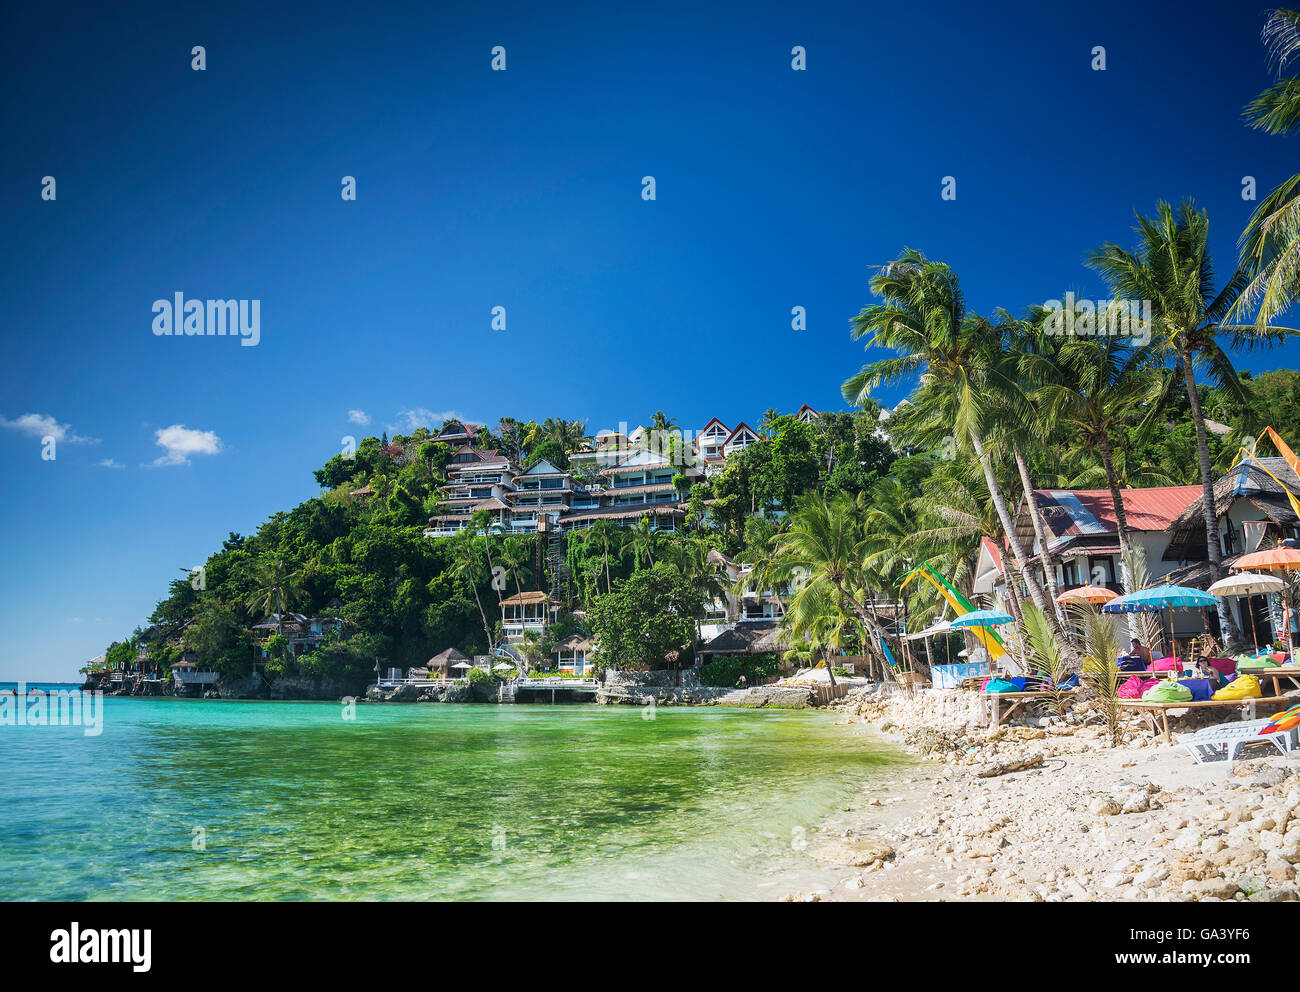 Diniwid beach resorts exotiques dans un paradis tropical boracay philippines Banque D'Images